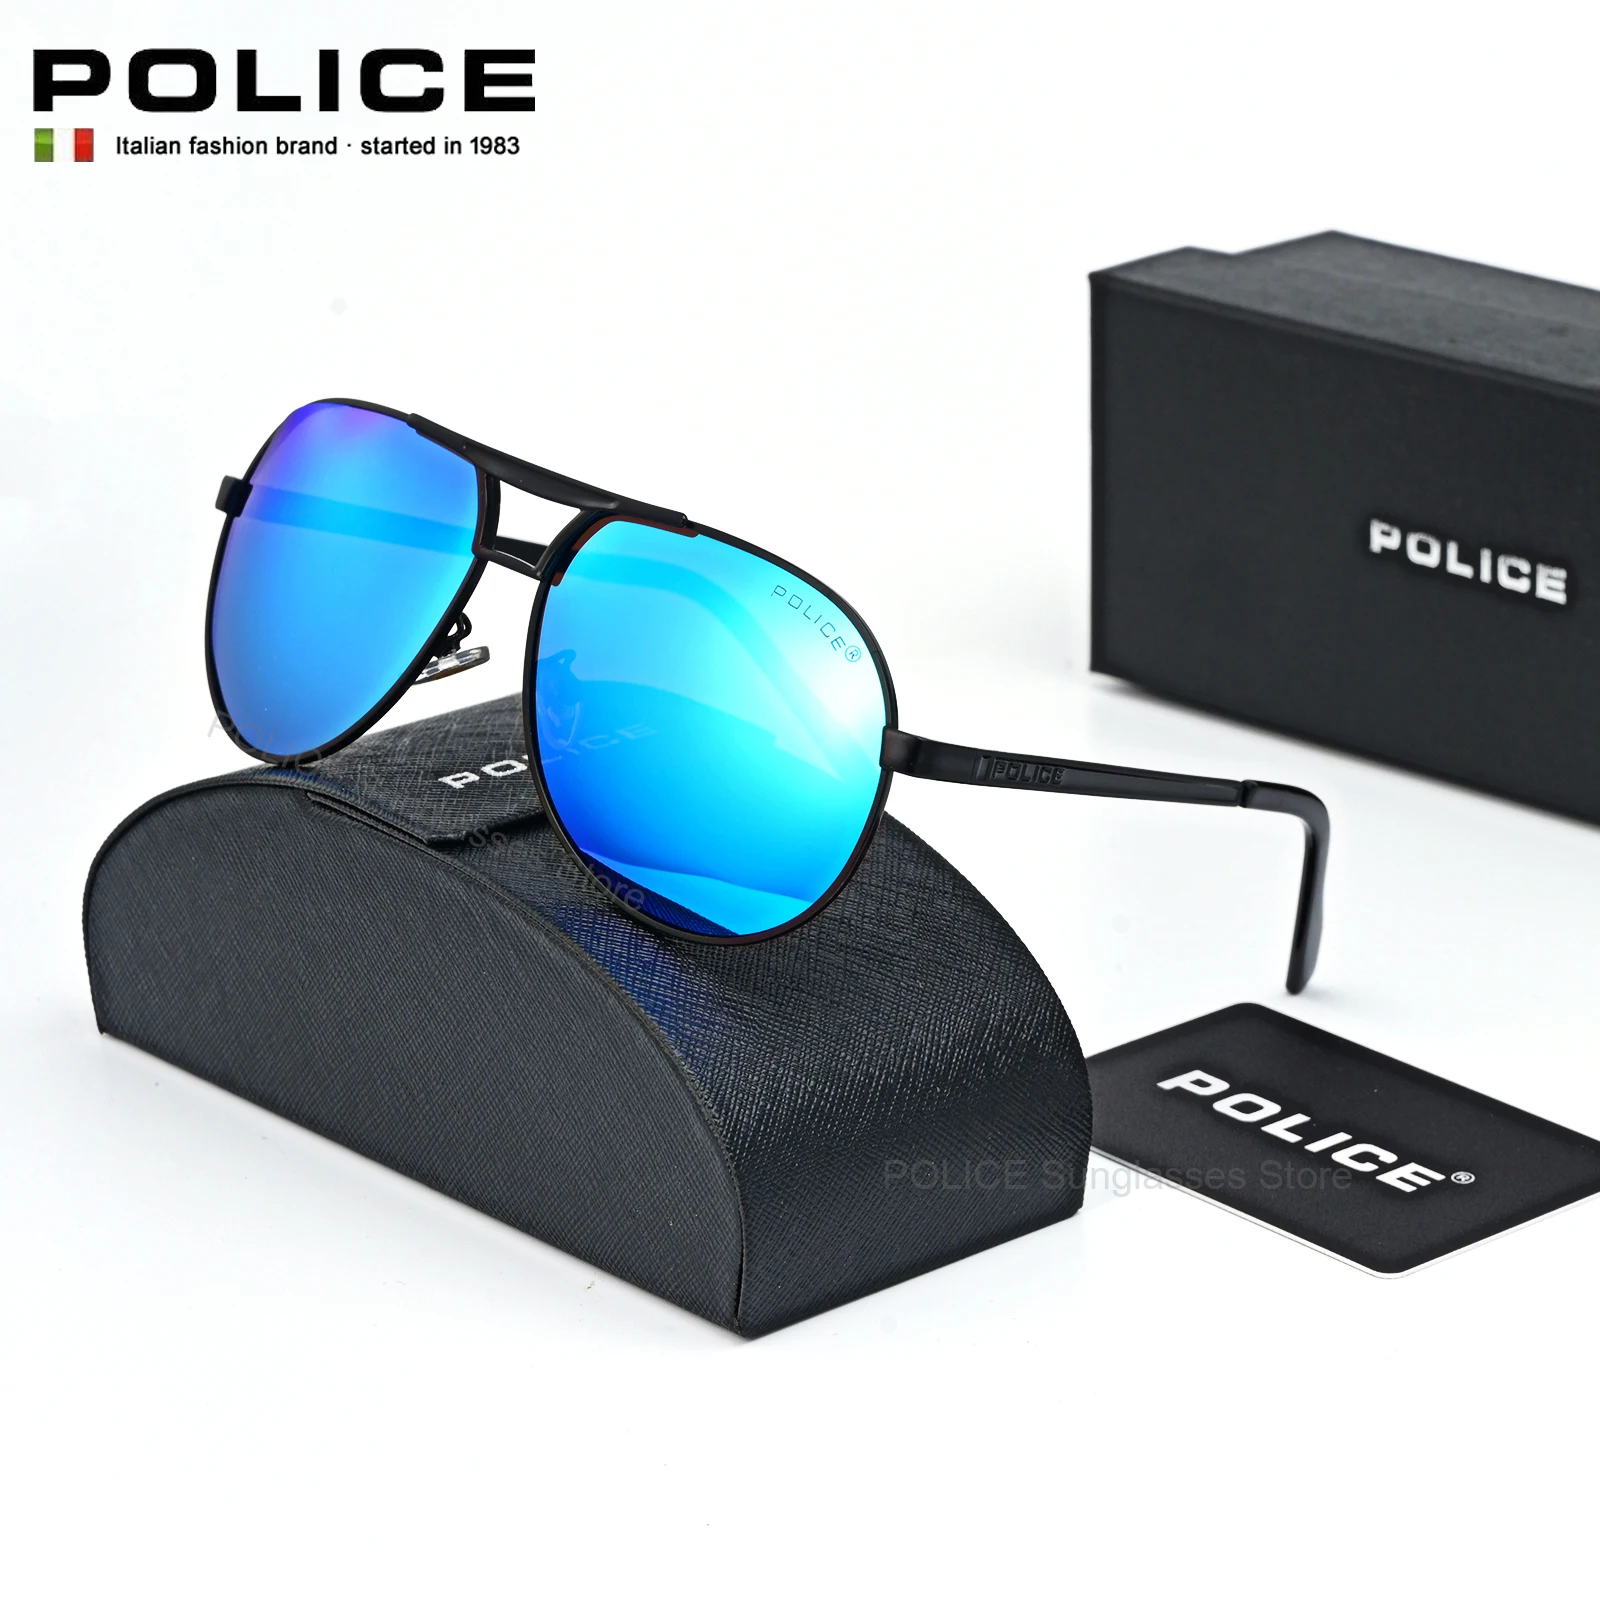 Lüks Marka Güneş Gözlüğü Moda POLİS eğilim Erkekler Polarize Marka Tasarım Gözlük Erkek UV400 parlama Önleyici sürüş gözlükleri